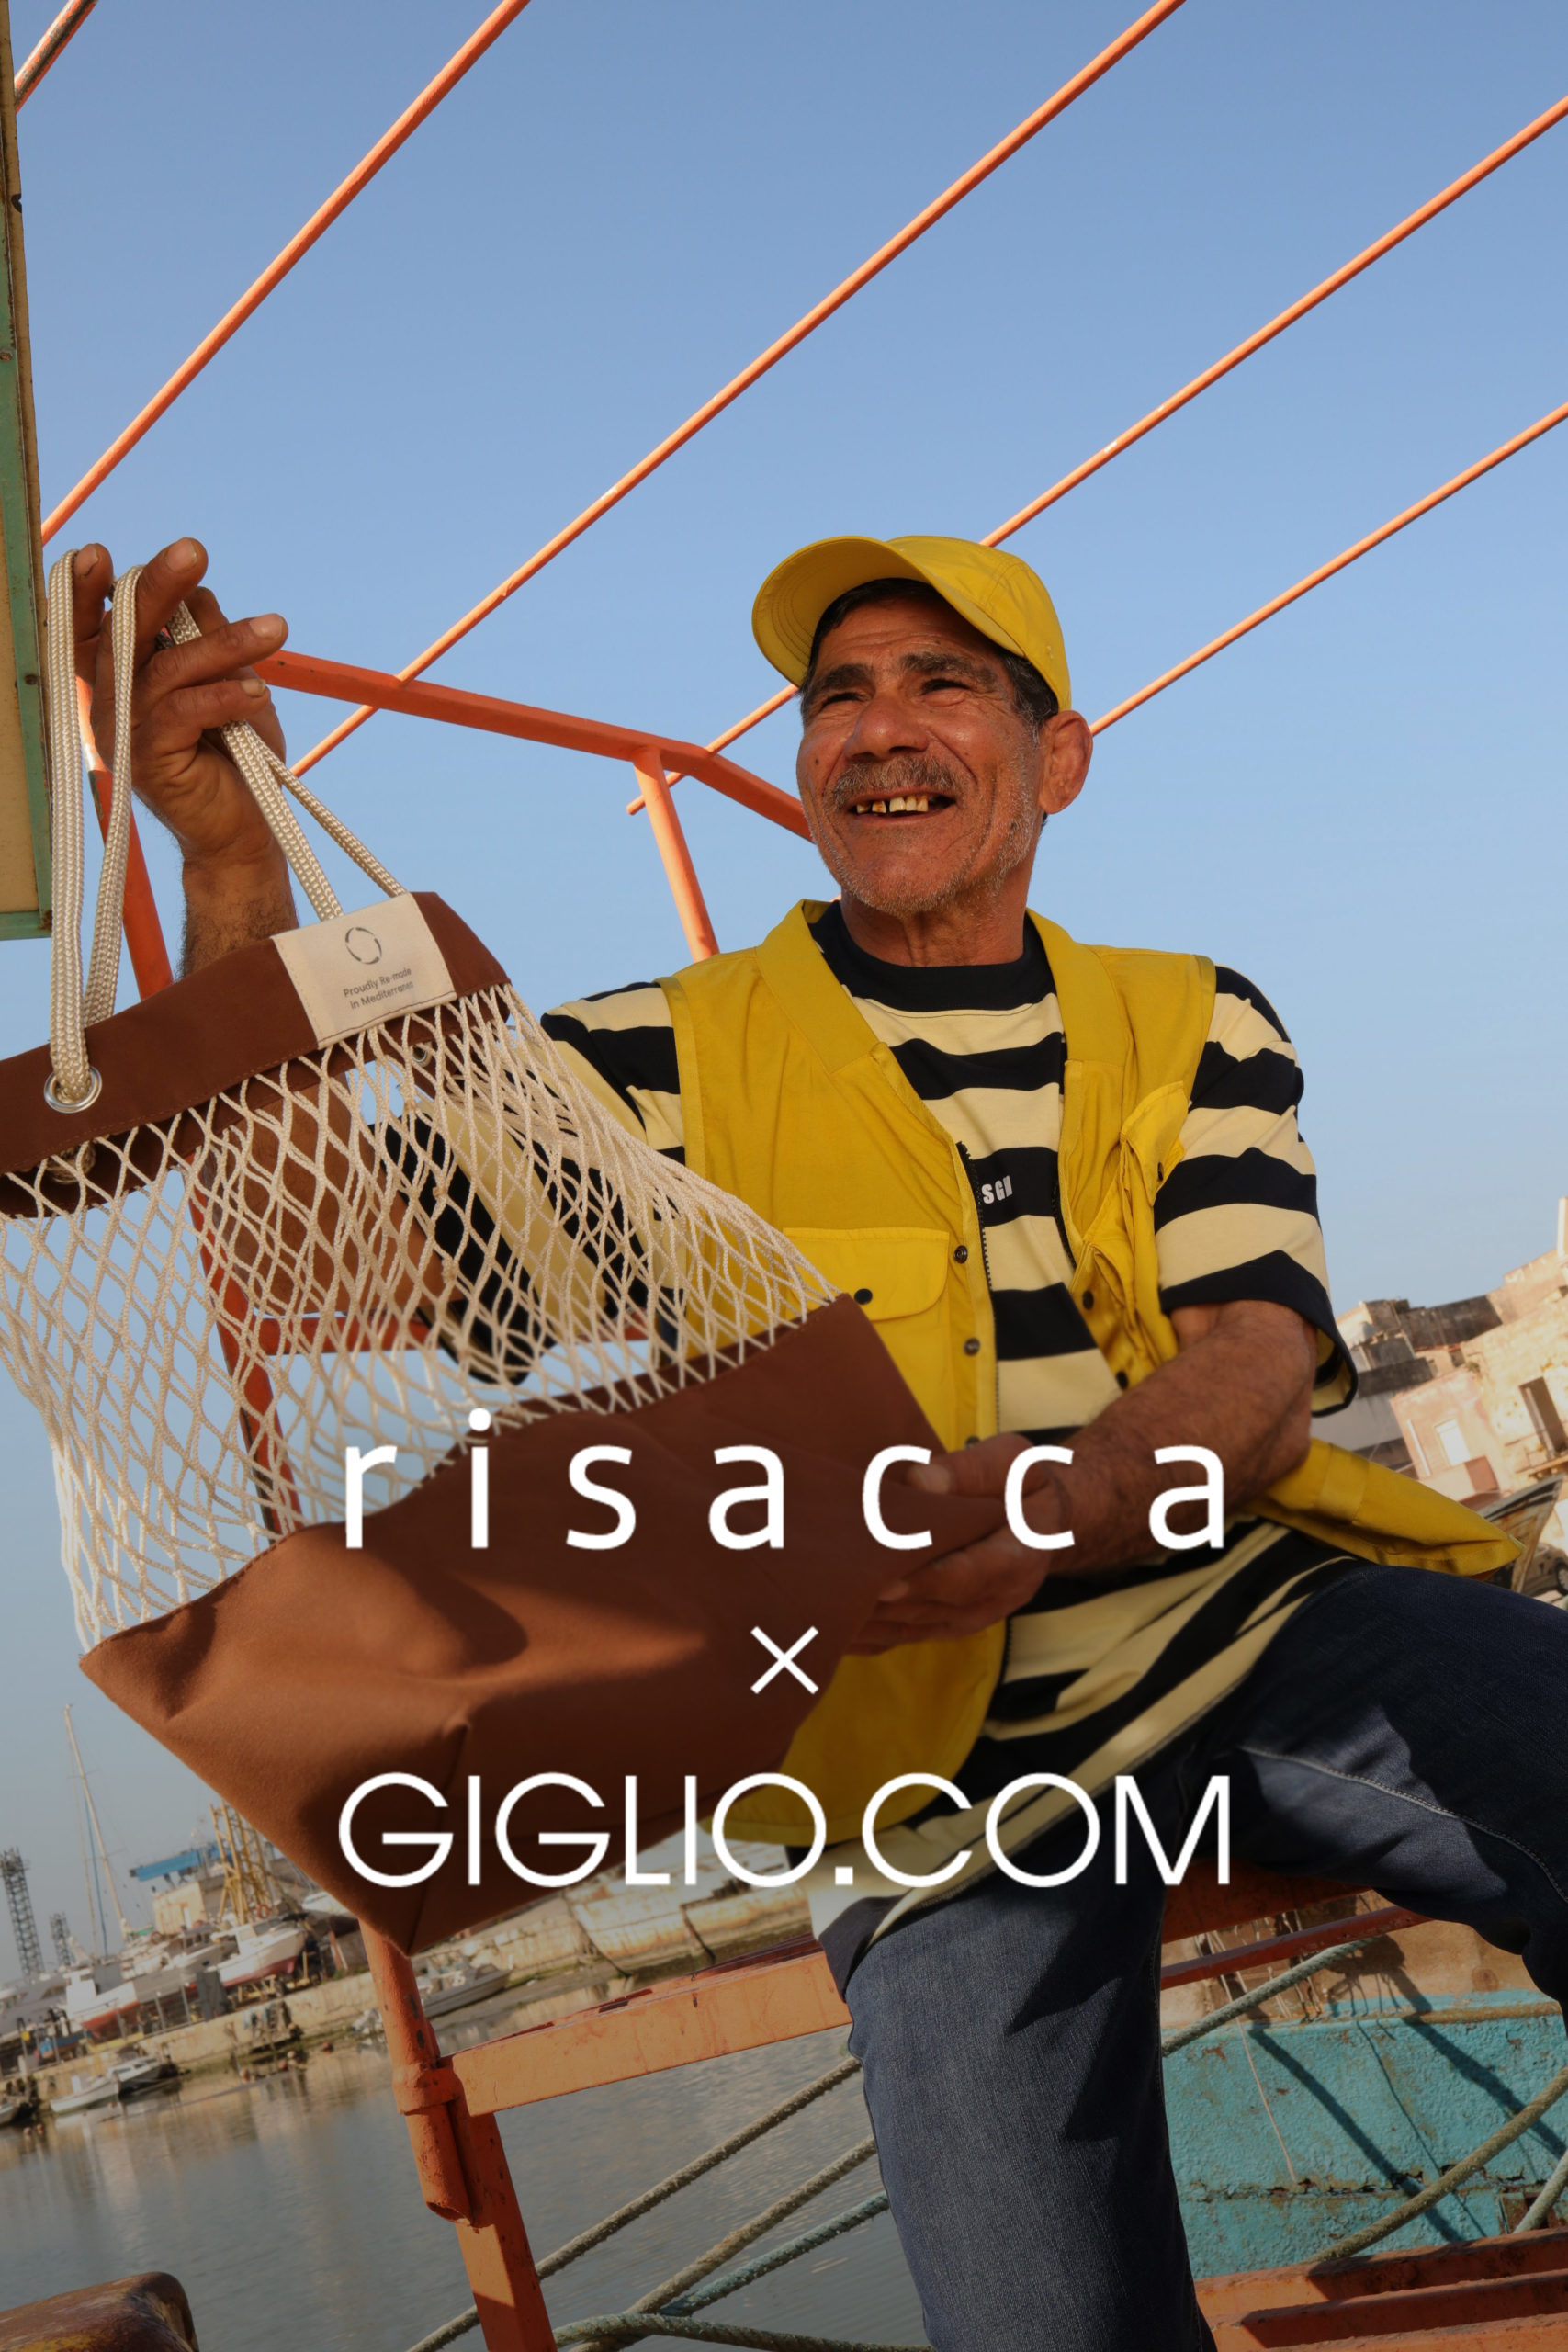 eco-bag Risacca e Giglio.com